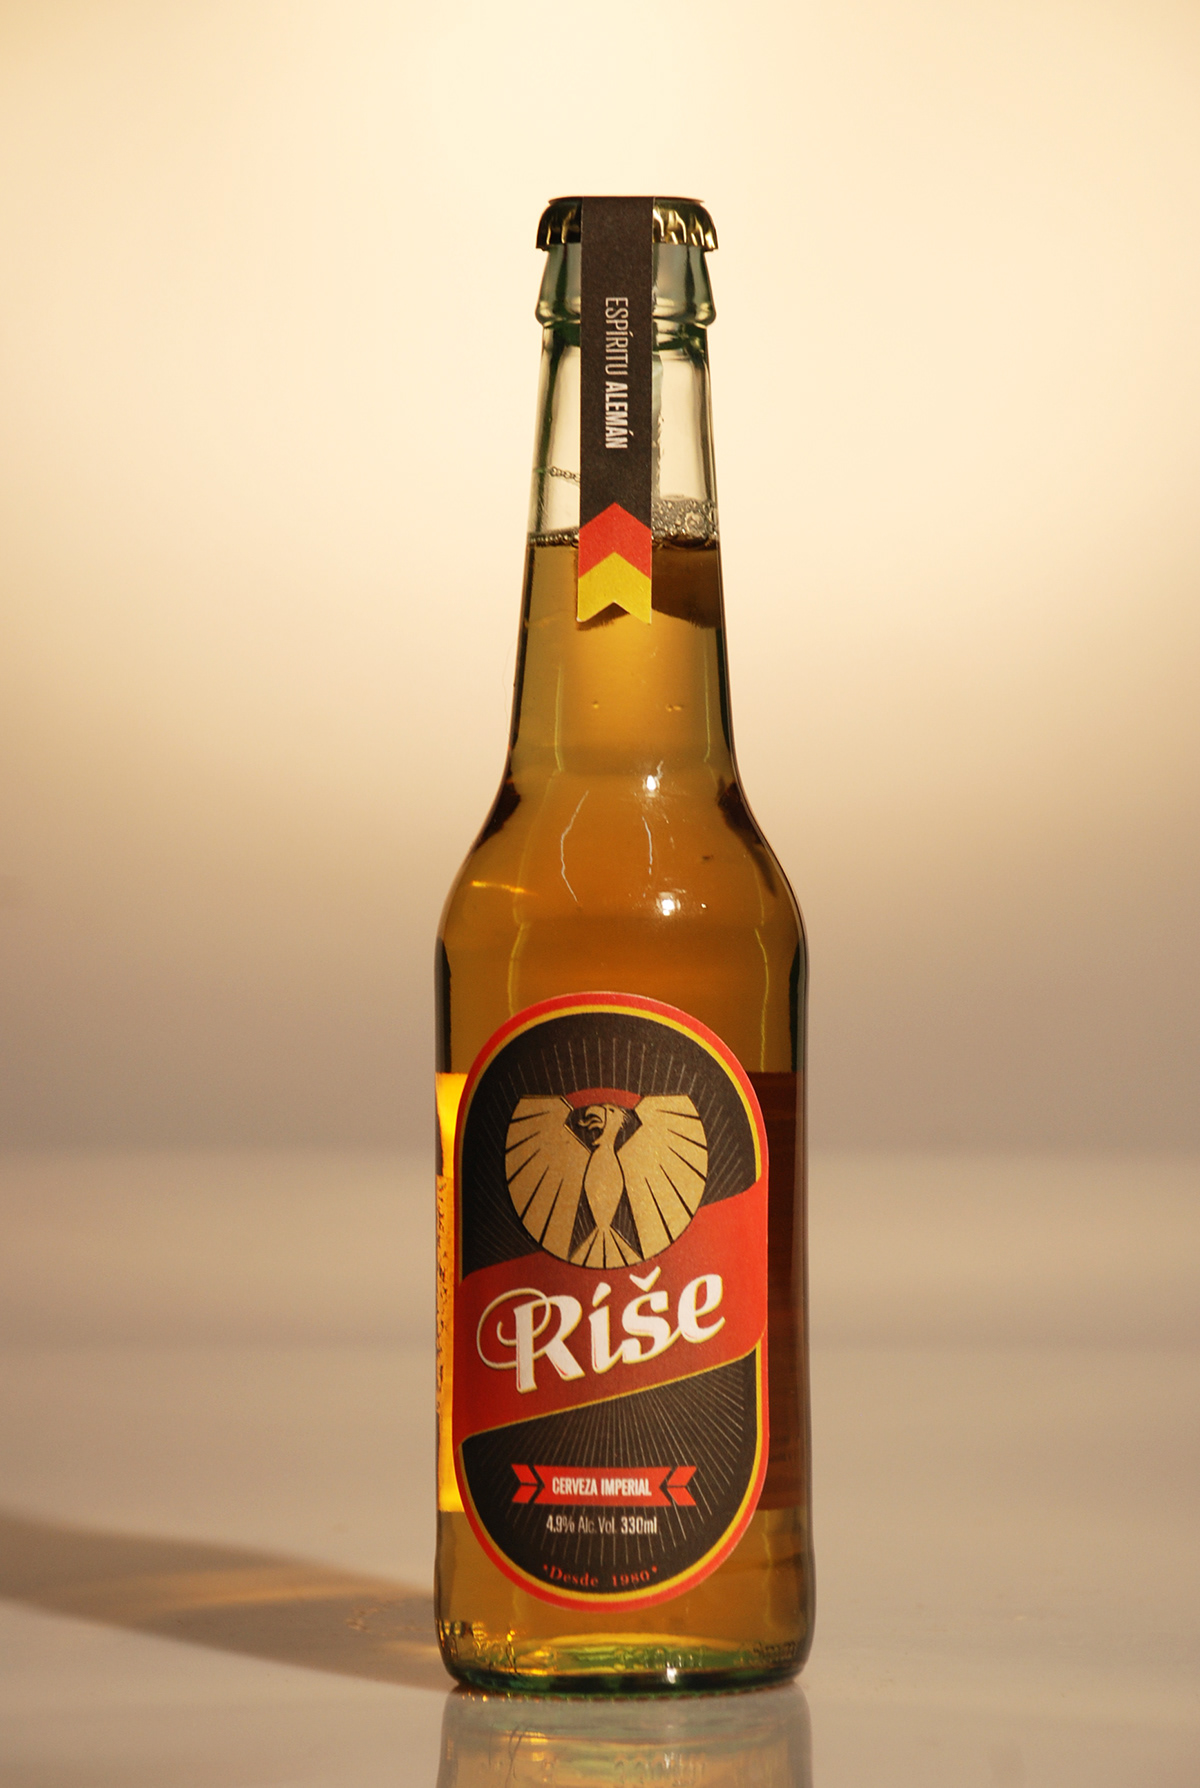 rise beer craft japan germany usa cerveza artesanal alemania estados unidos power strength red gold